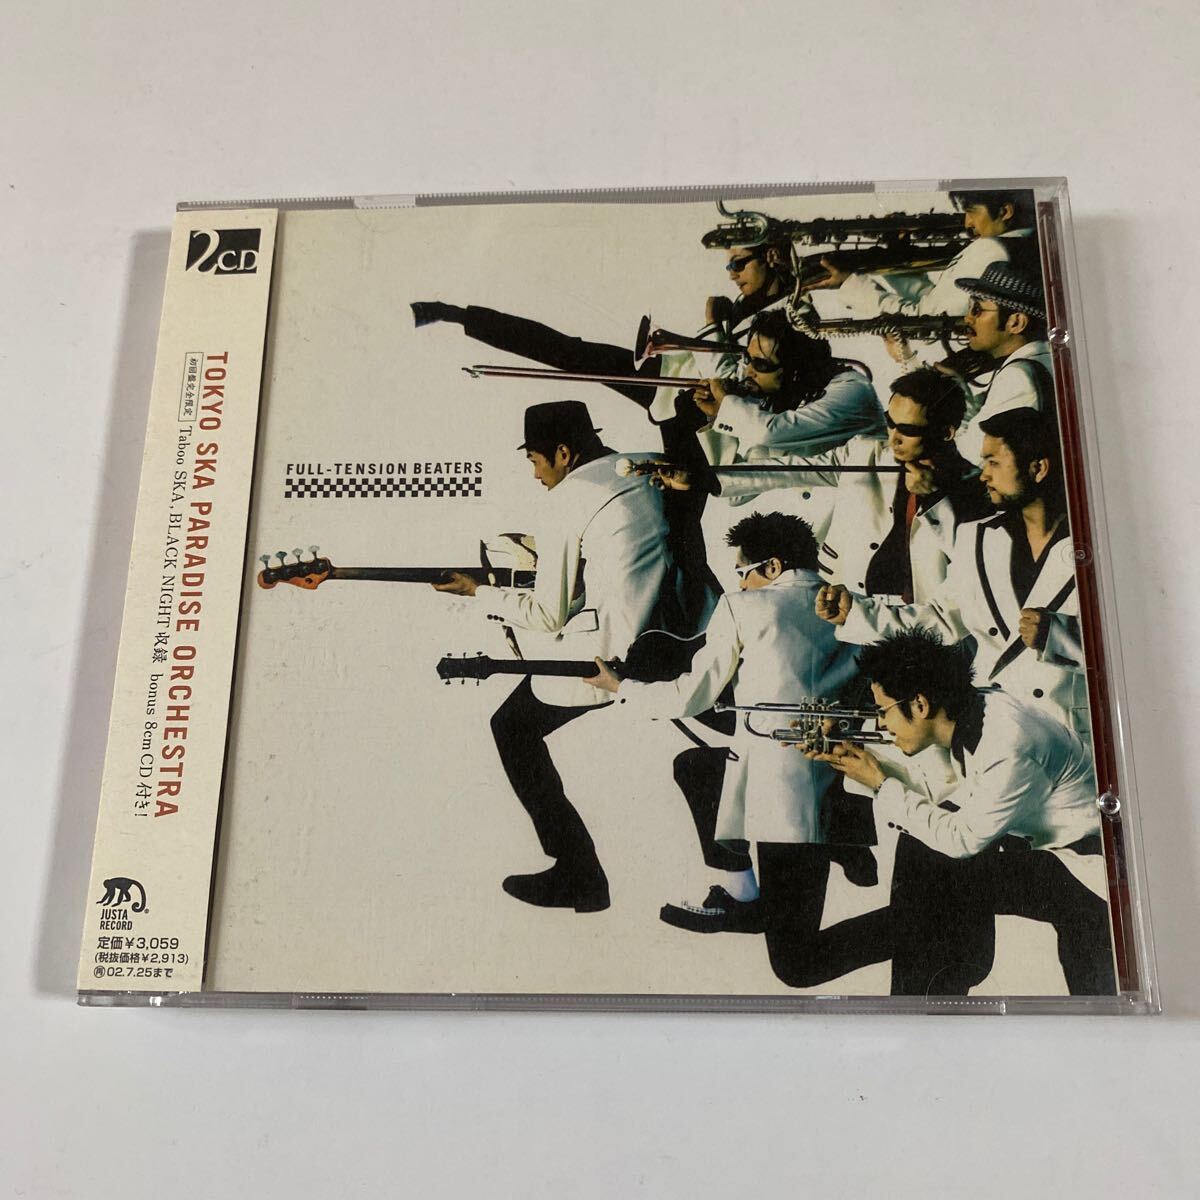 東京スカパラダイスオーケストラ CD+8cmCD 2枚組「FULL-TENSION BEATERS」_画像1